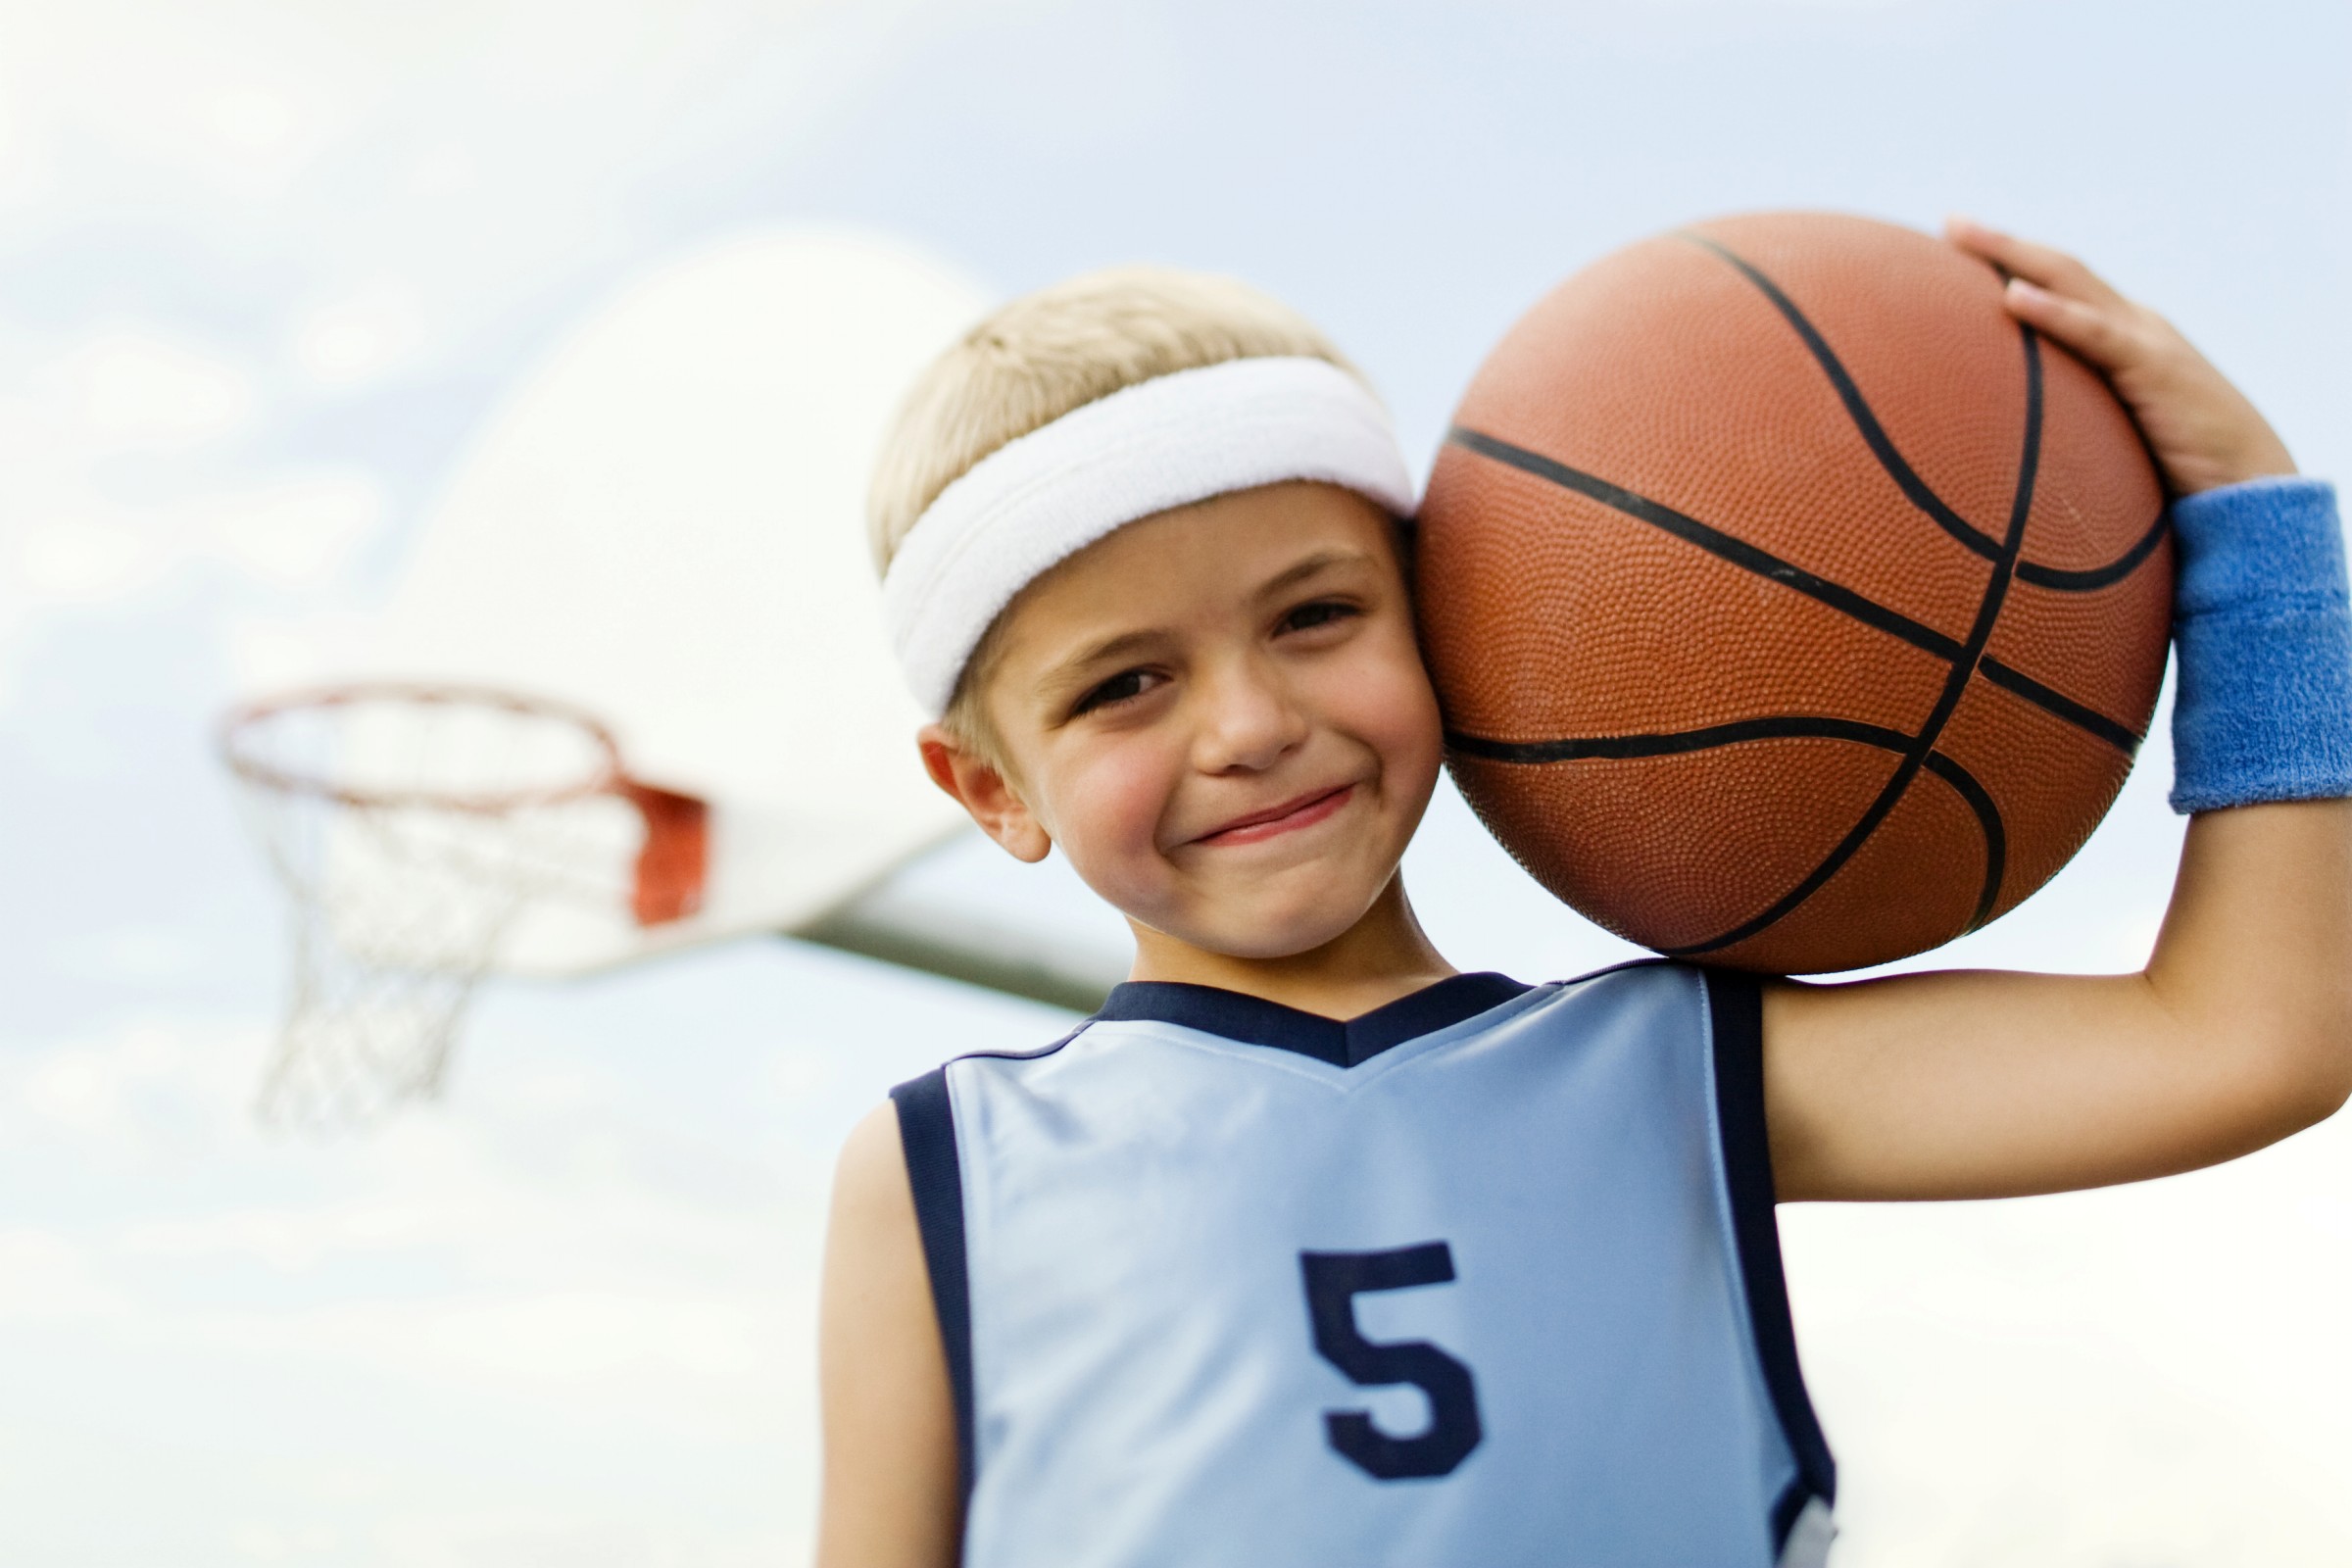 Sport can play with. Баскетбол дети. Спорт дети. Дети спортсмены. Ребенок с баскетбольным мячом.